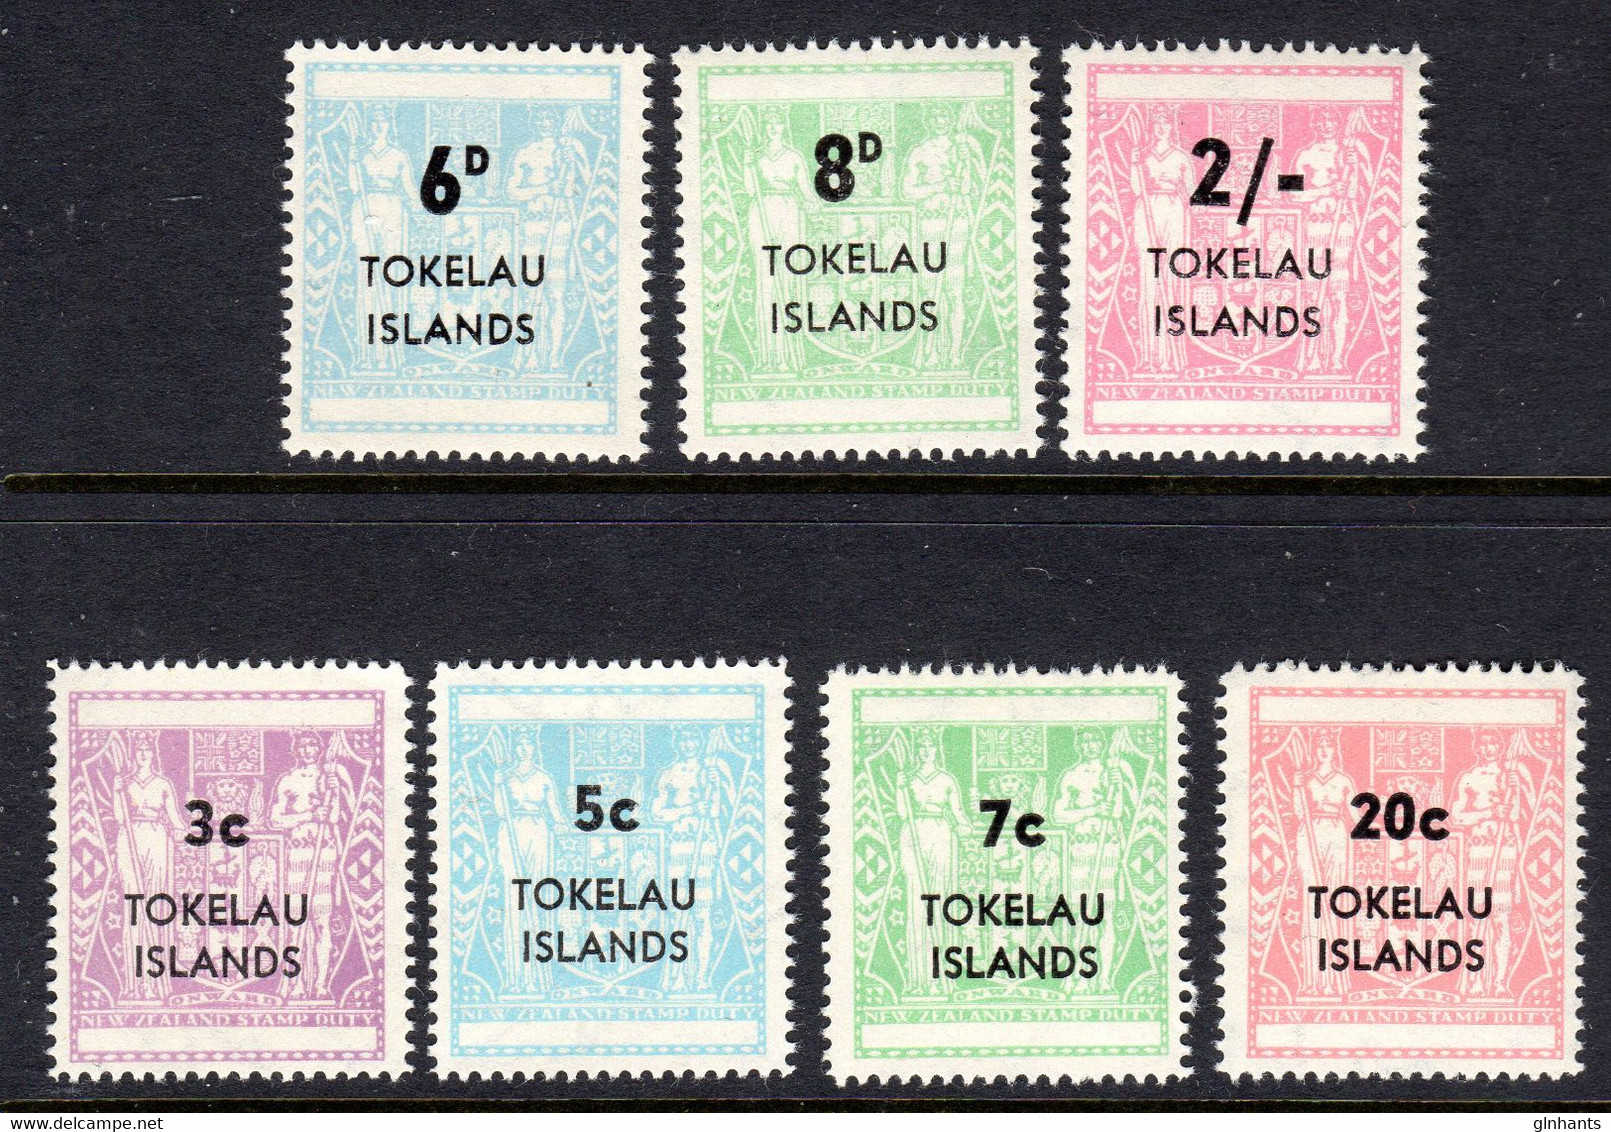 TOKELAU - 1966 1967 OVERPRINT SETS (7V) FINE MNH ** SG 6-8, 12-15 - Tokelau